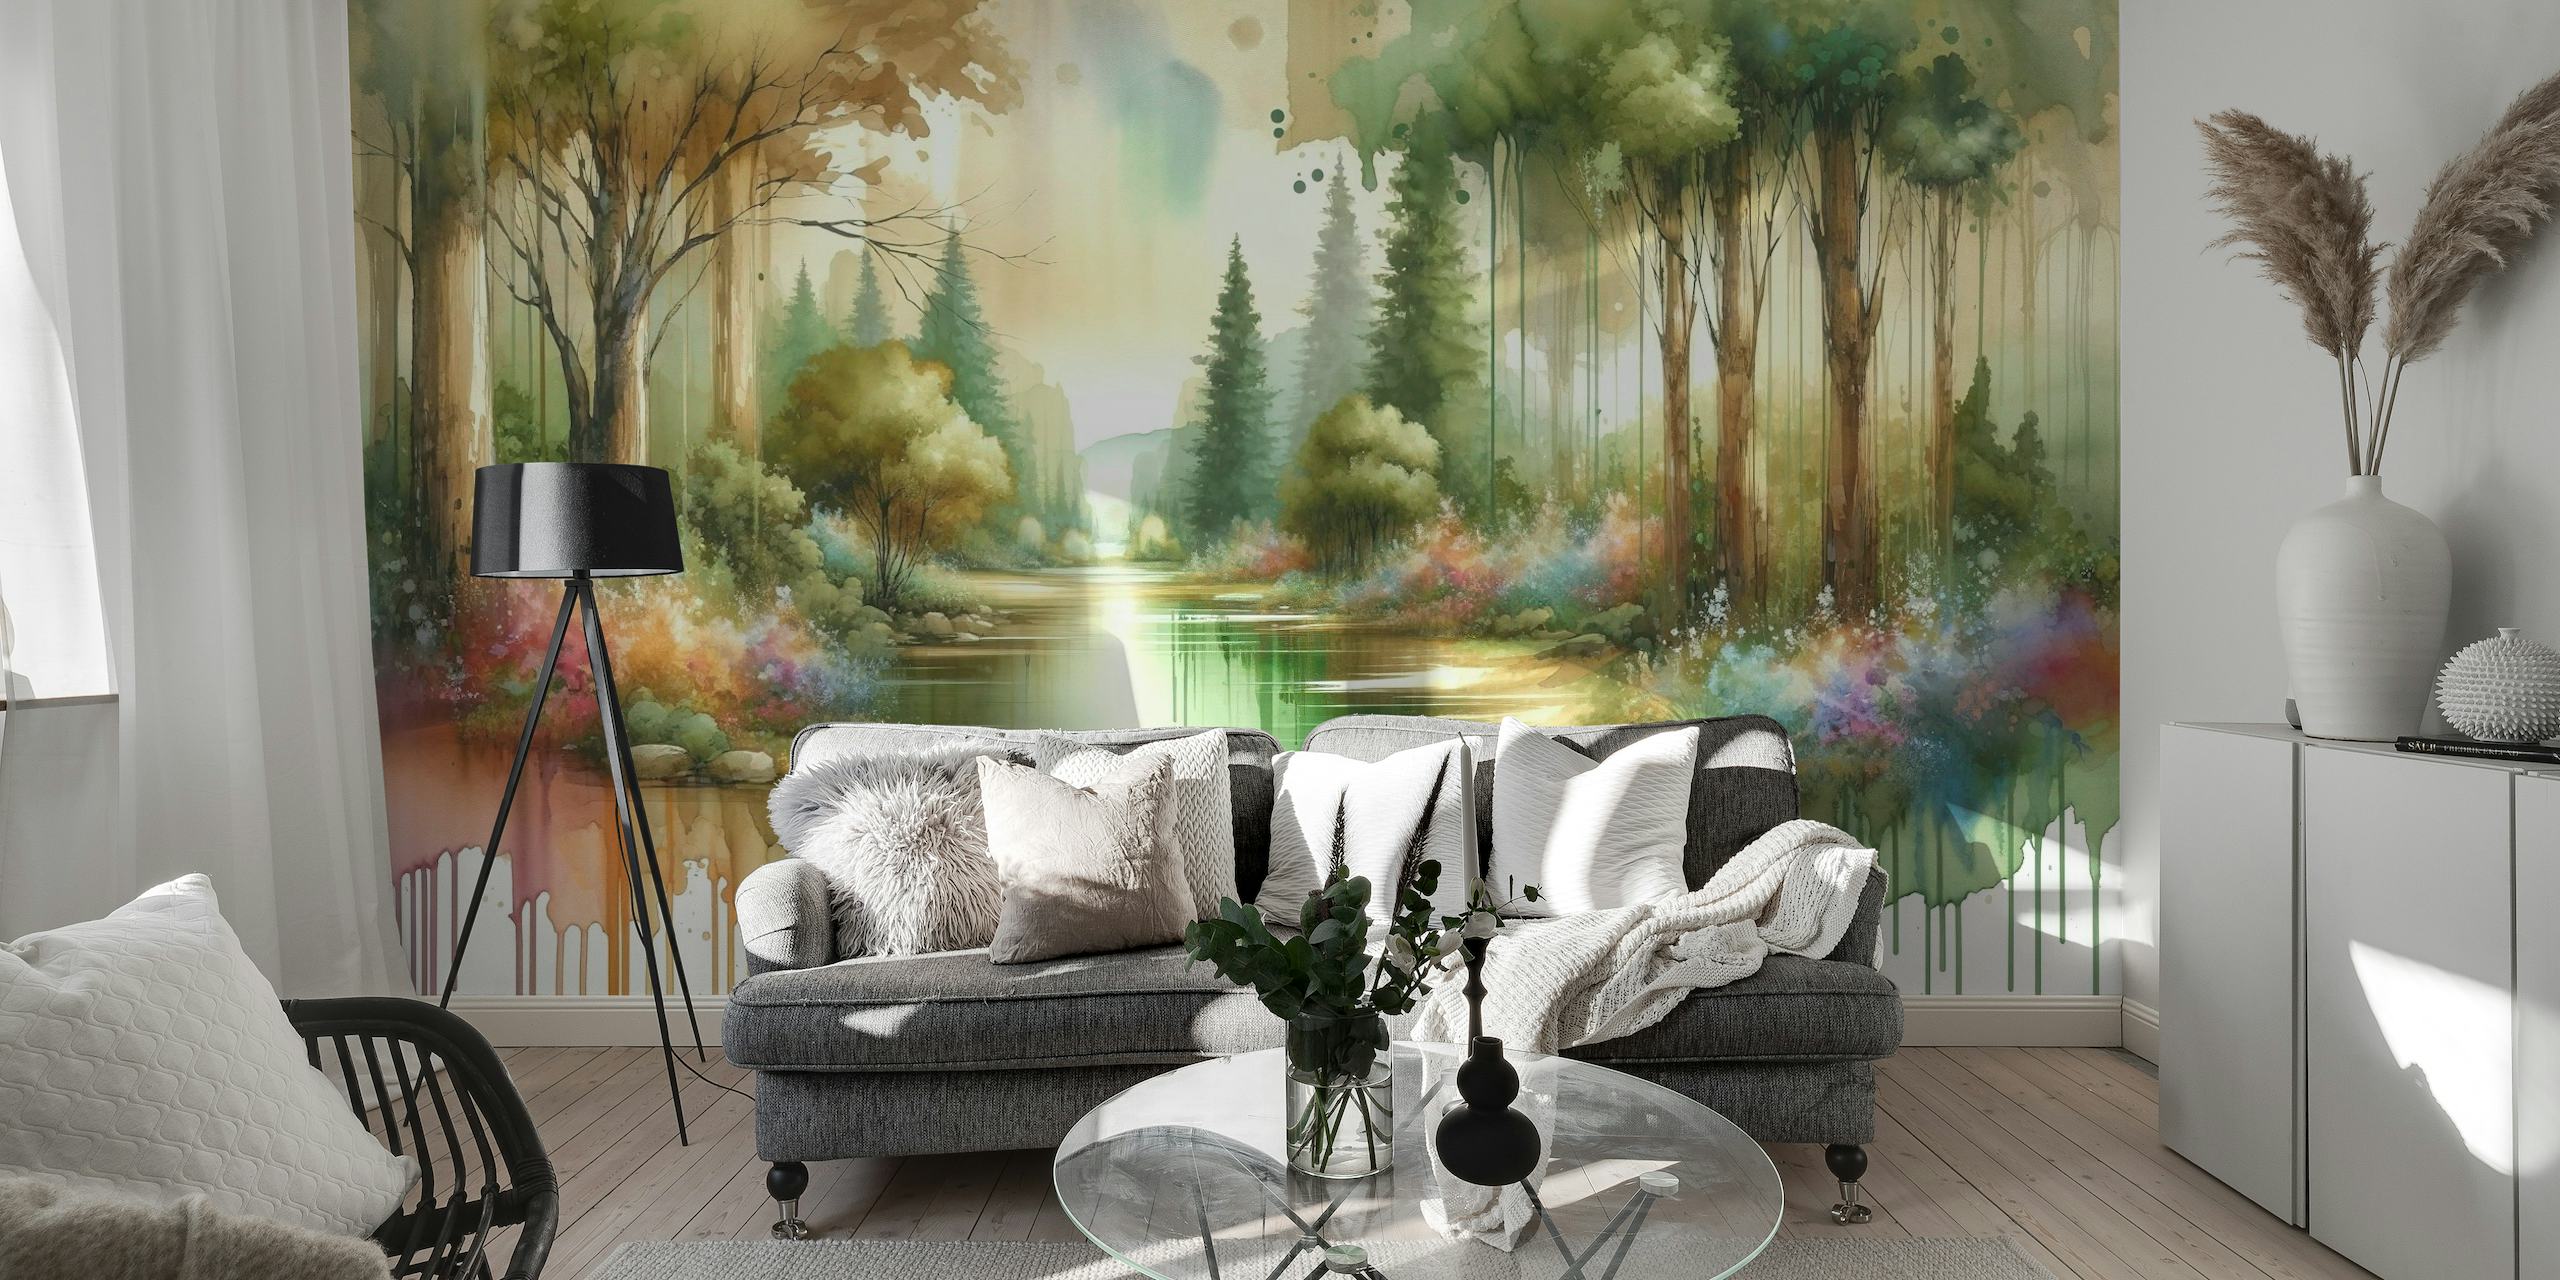 Sanjiva šumska scena u akvarelu s reflektirajućim jezerom i šarenom florom